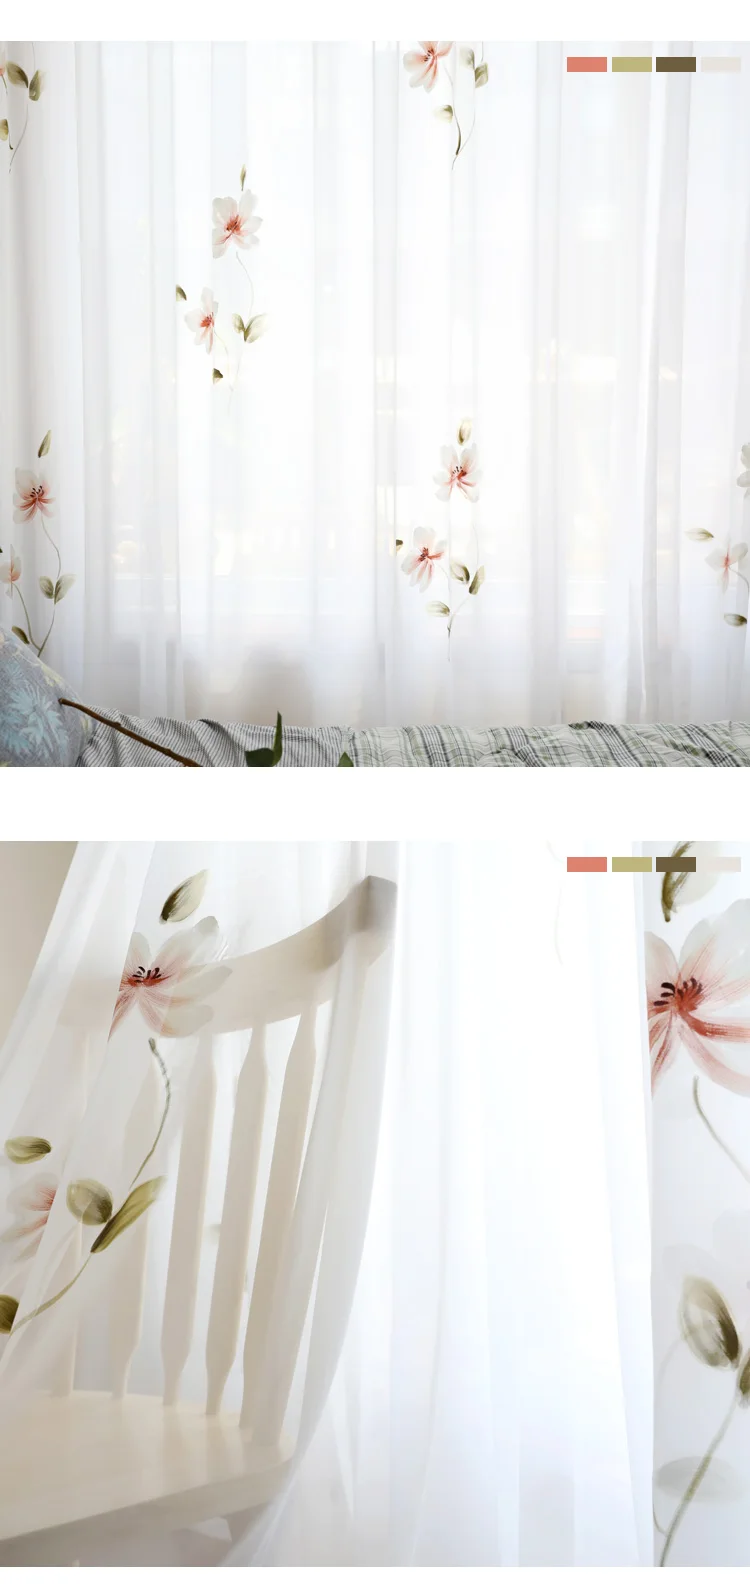 Занавески для гостиной, элегантные занавески для кухни в стиле лотоса, занавески для спальни, готовые занавески на заказ